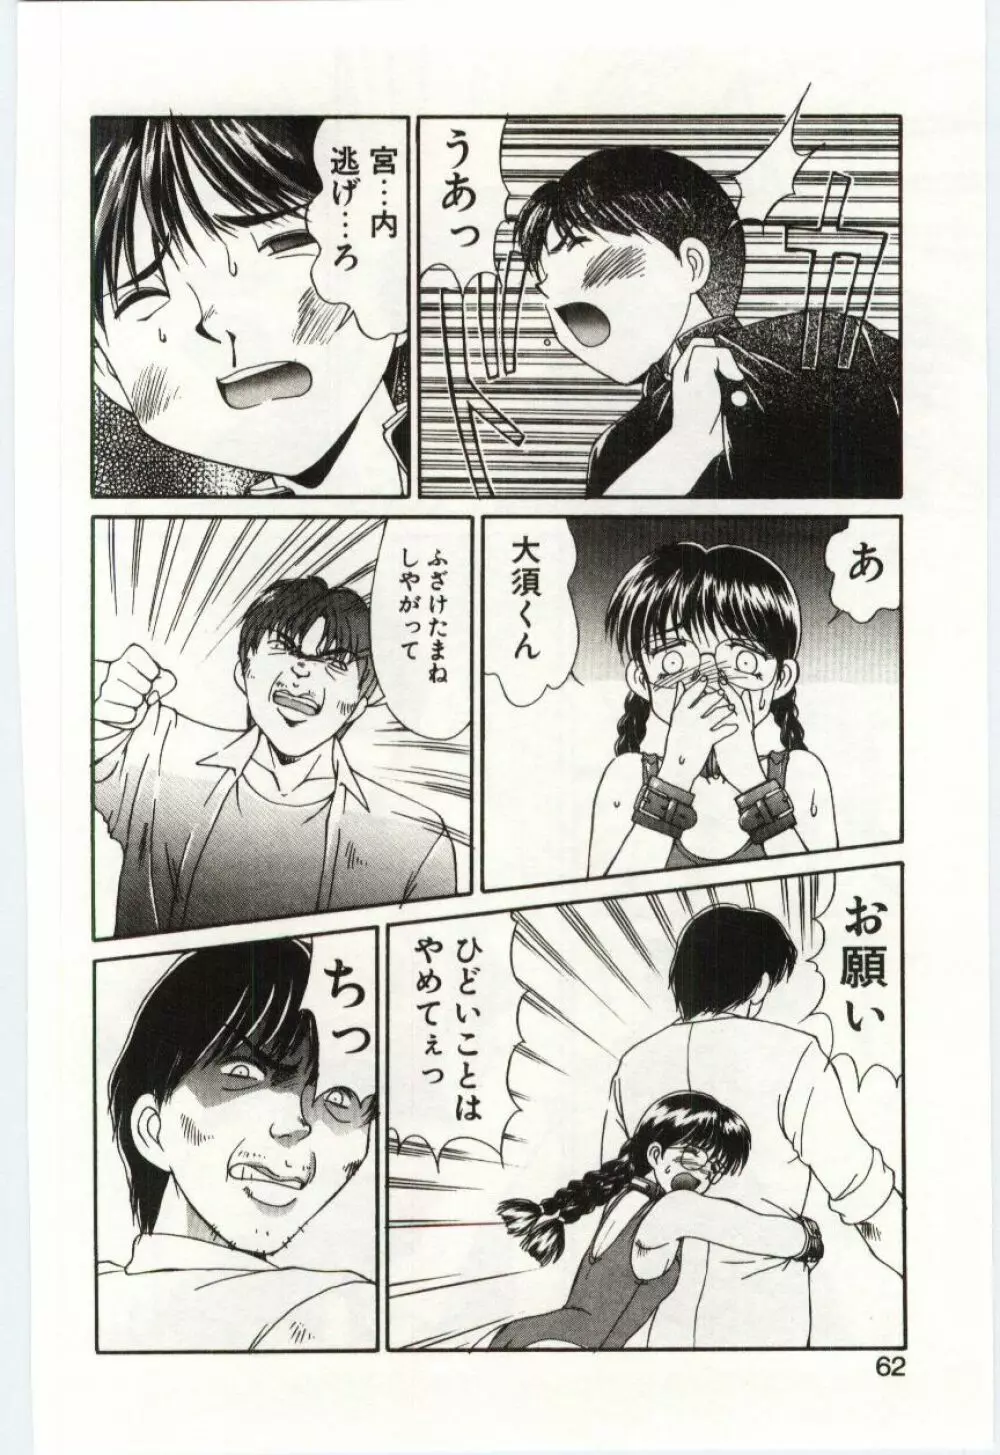 Mizugi Crisis part 1 - JP Page.61